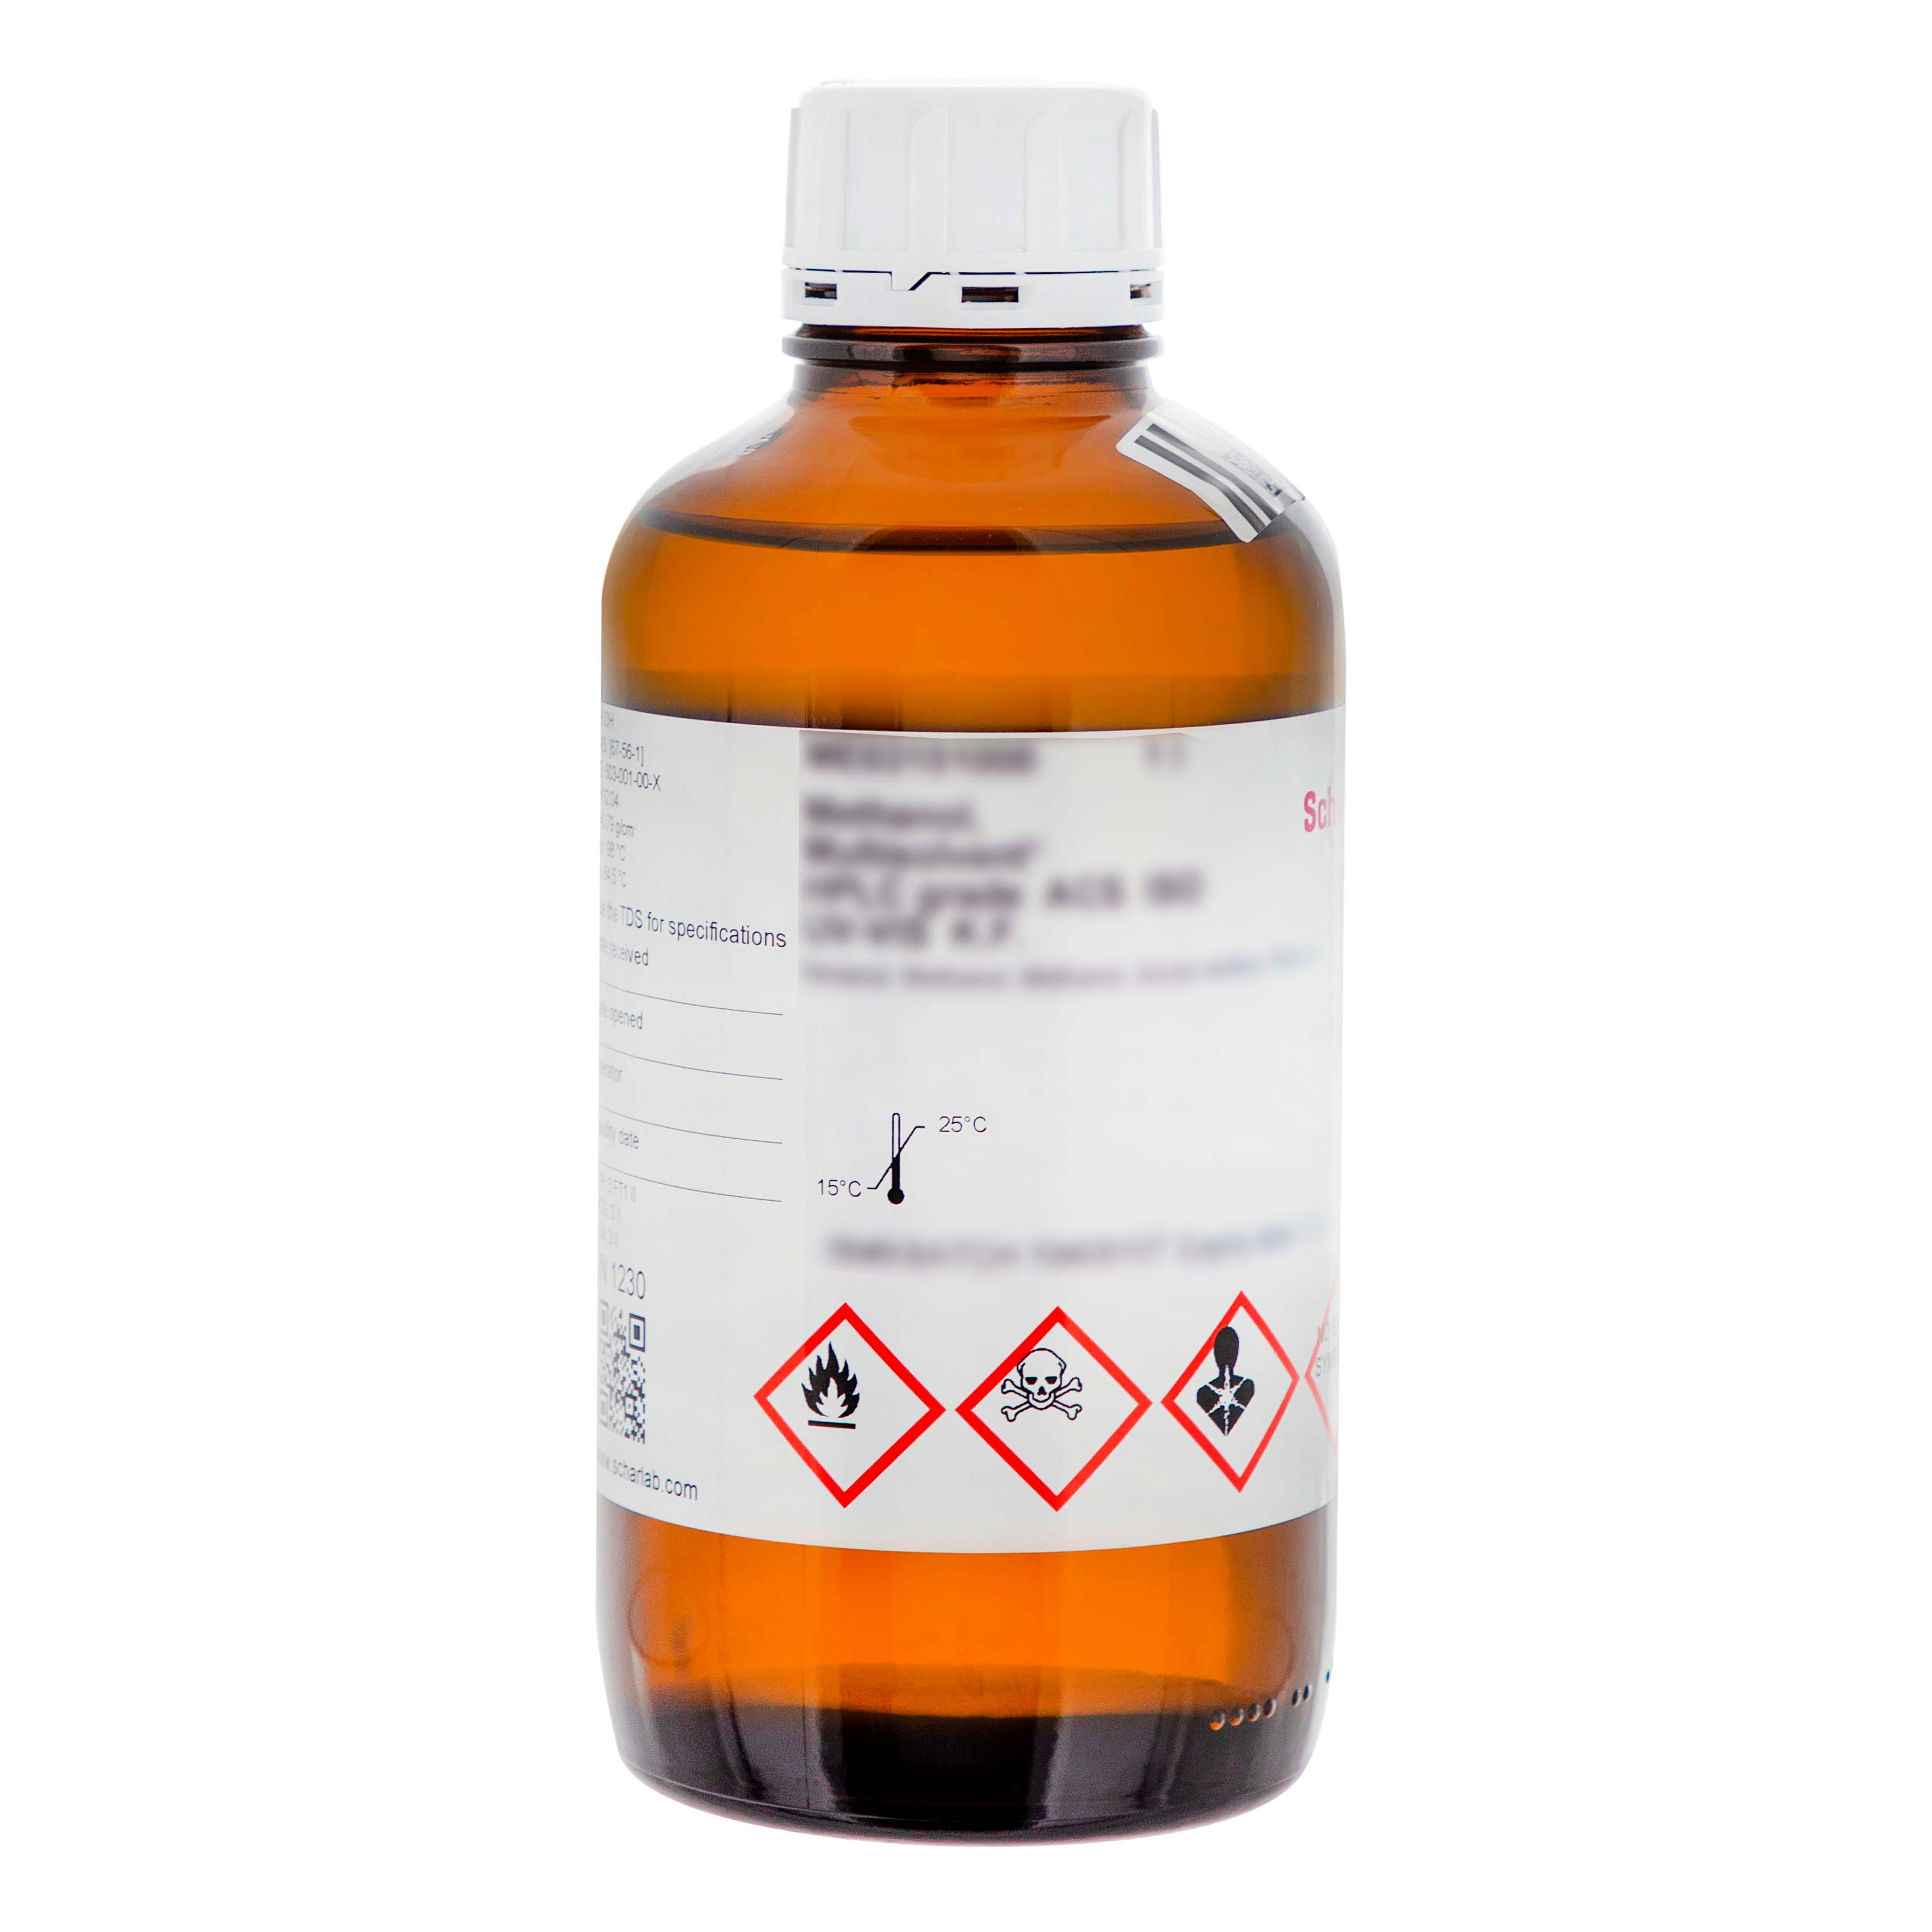 Plata nitrato 0.1 N - productos químicos, reactivos analíticos, material  para laboratorio y medios de cultivo.